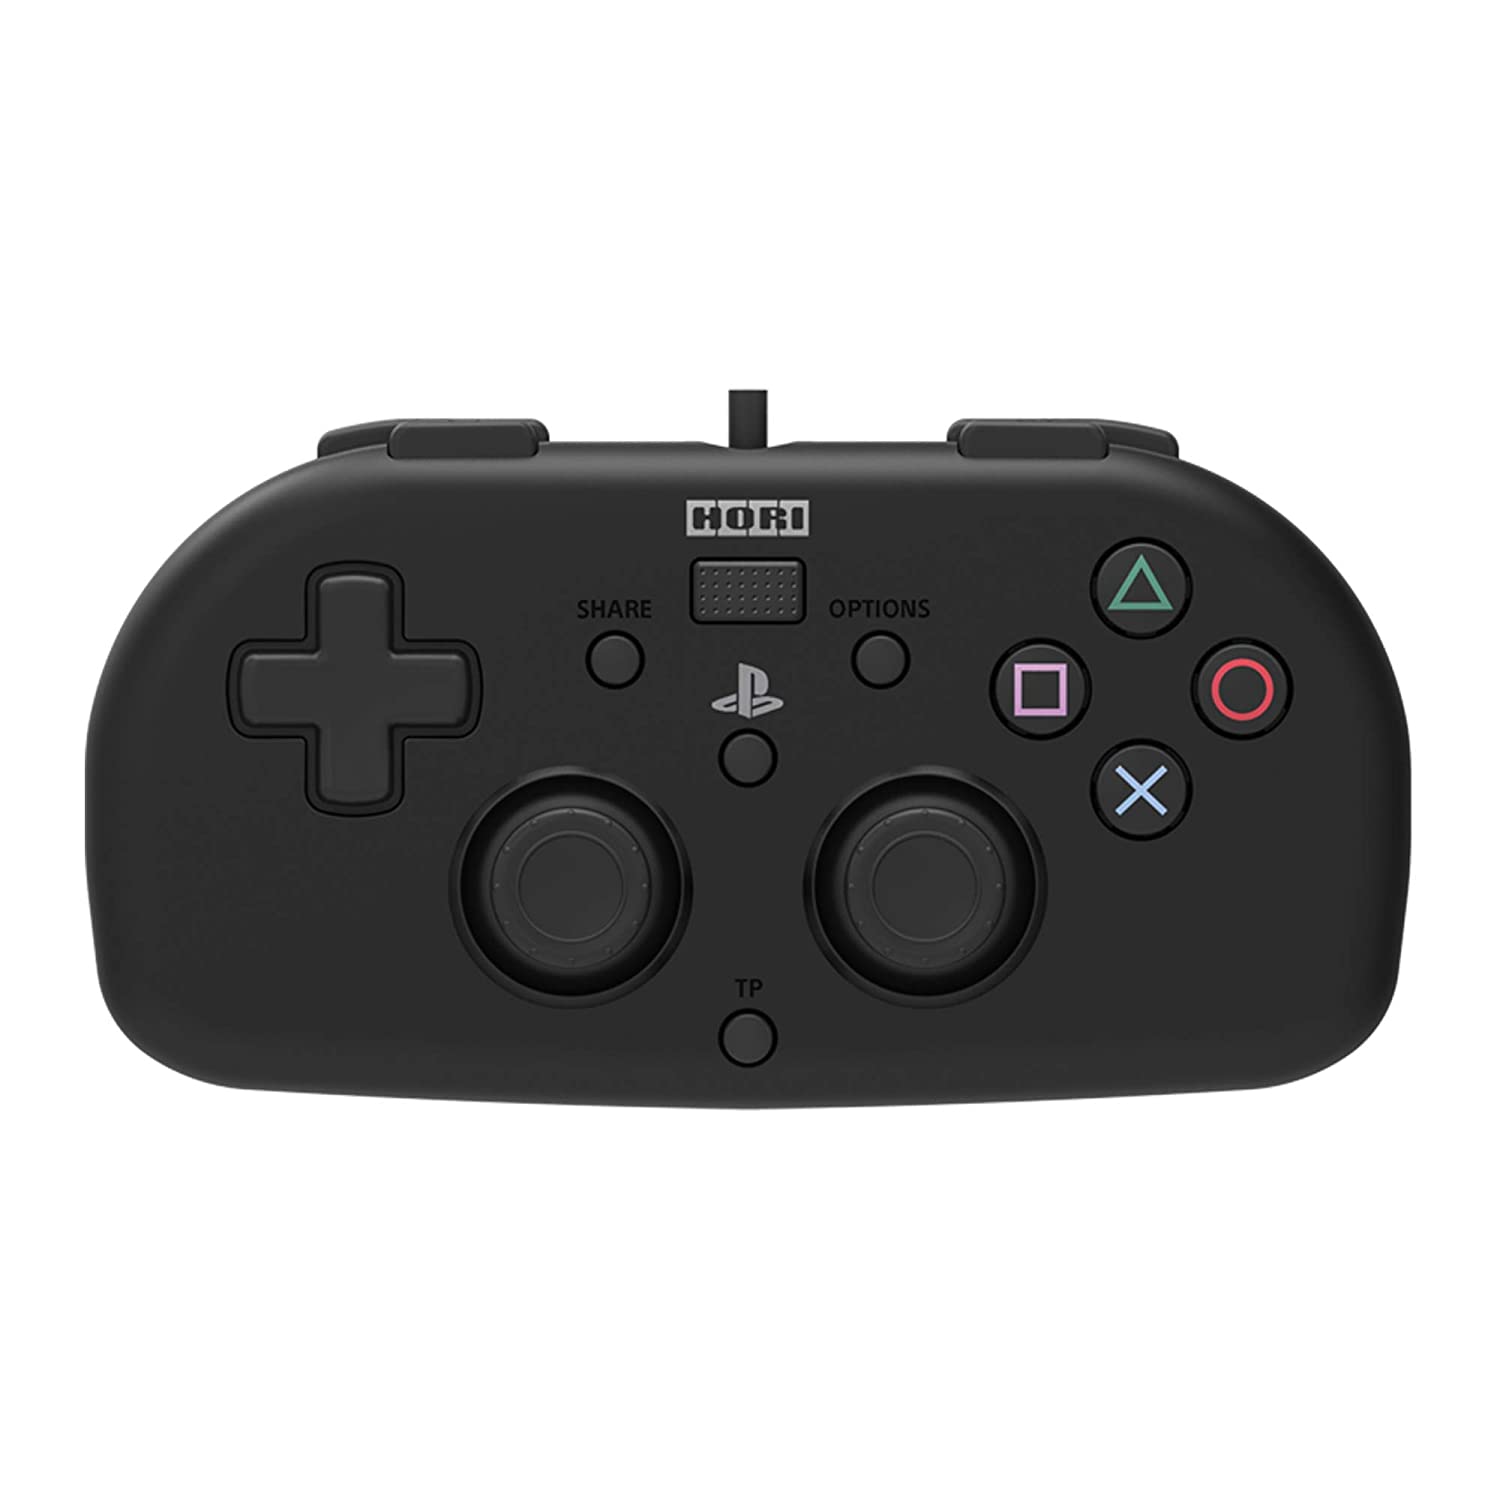 HORI Mini PS4 vezetékes kontroller - PlayStation 4 Kontrollerek